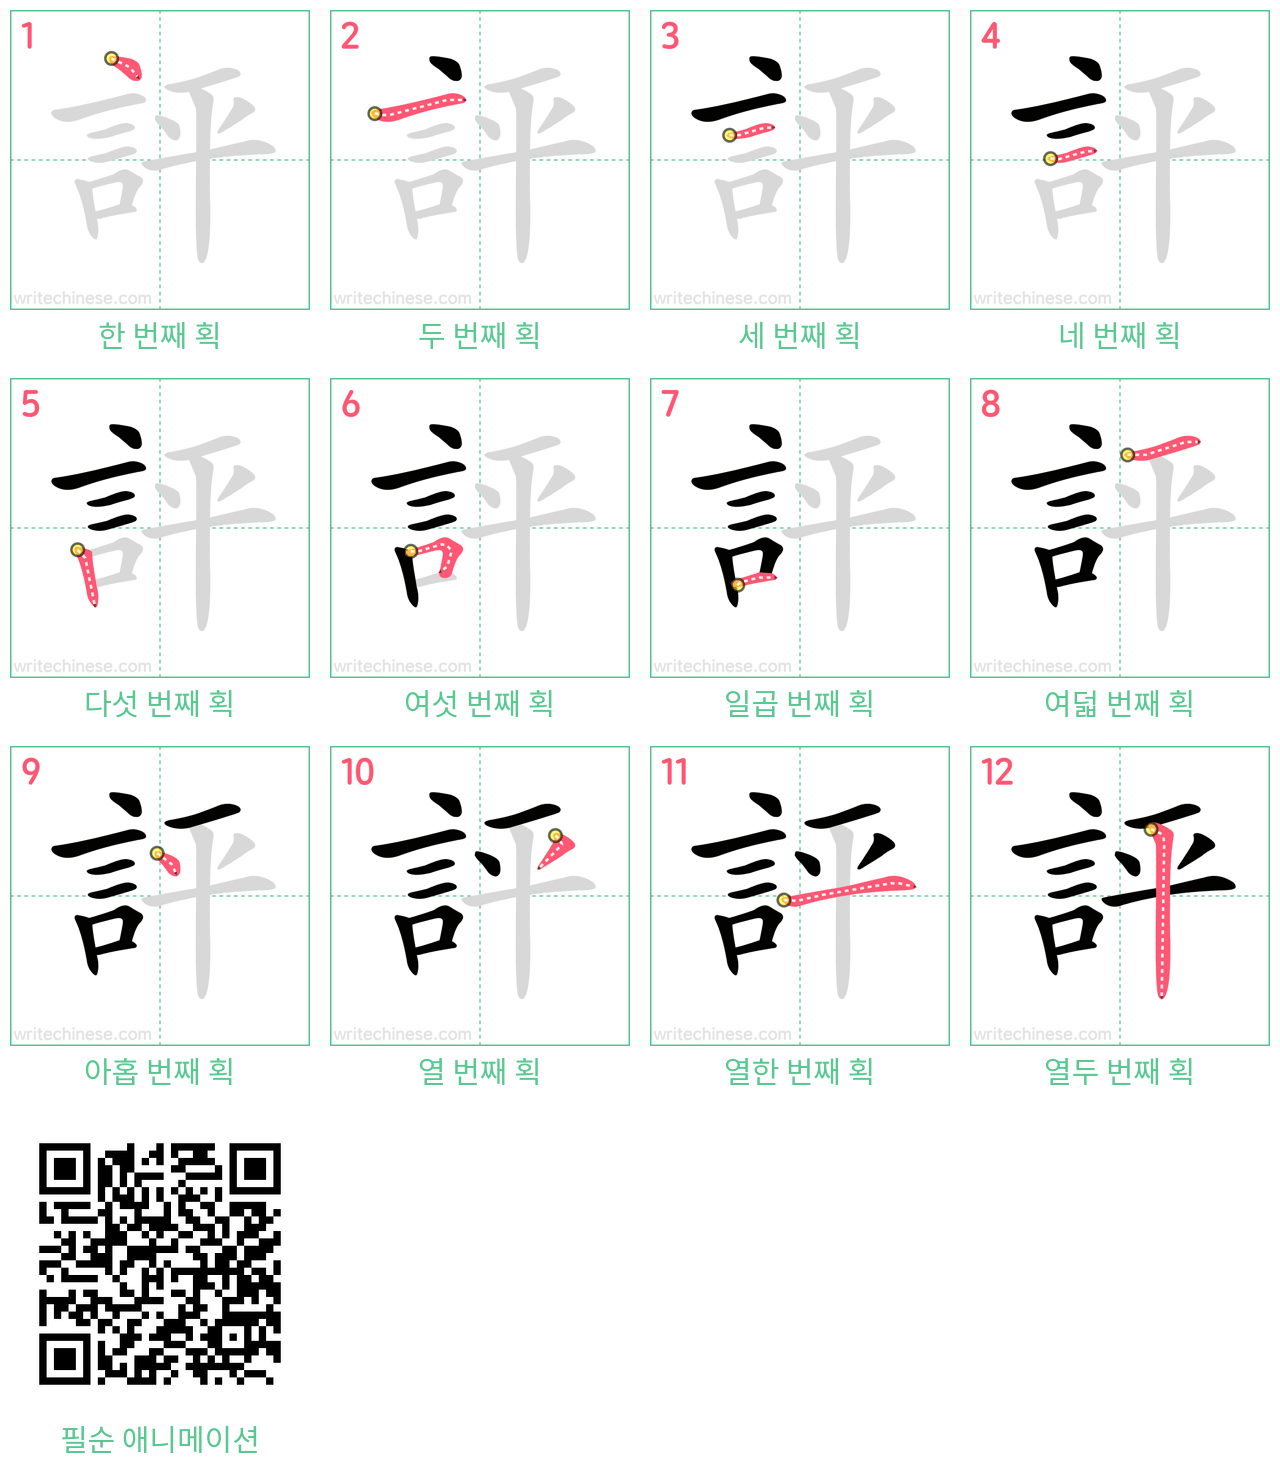 評 step-by-step stroke order diagrams